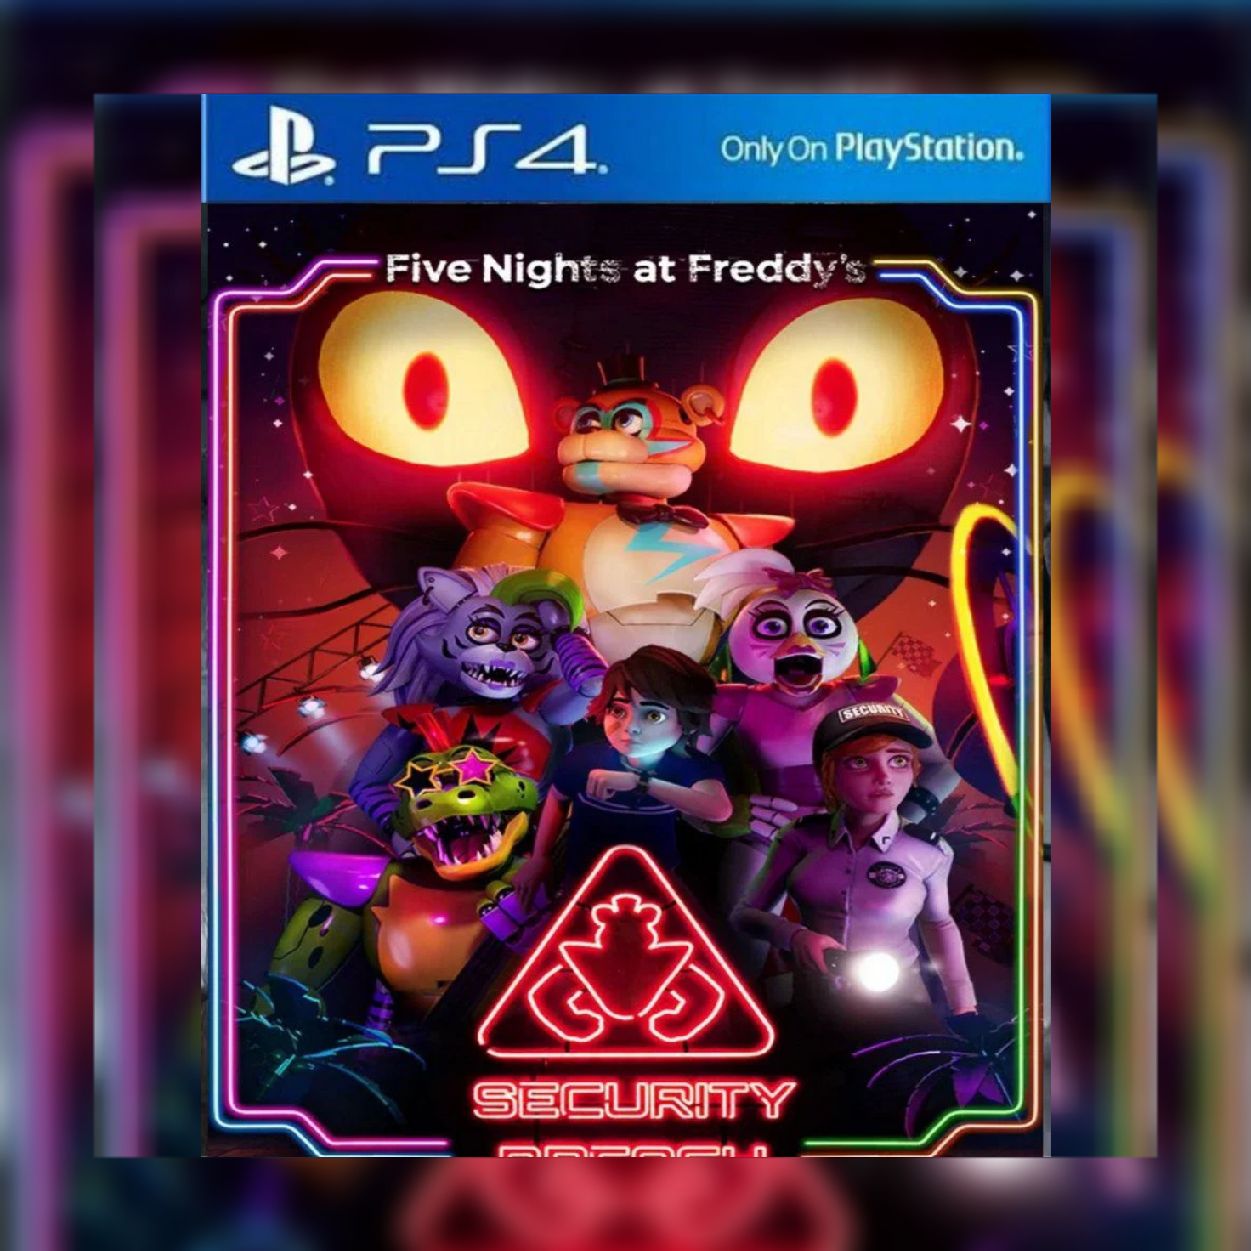 Five Nights At Freddy's As aventuras de uma segurança - 19